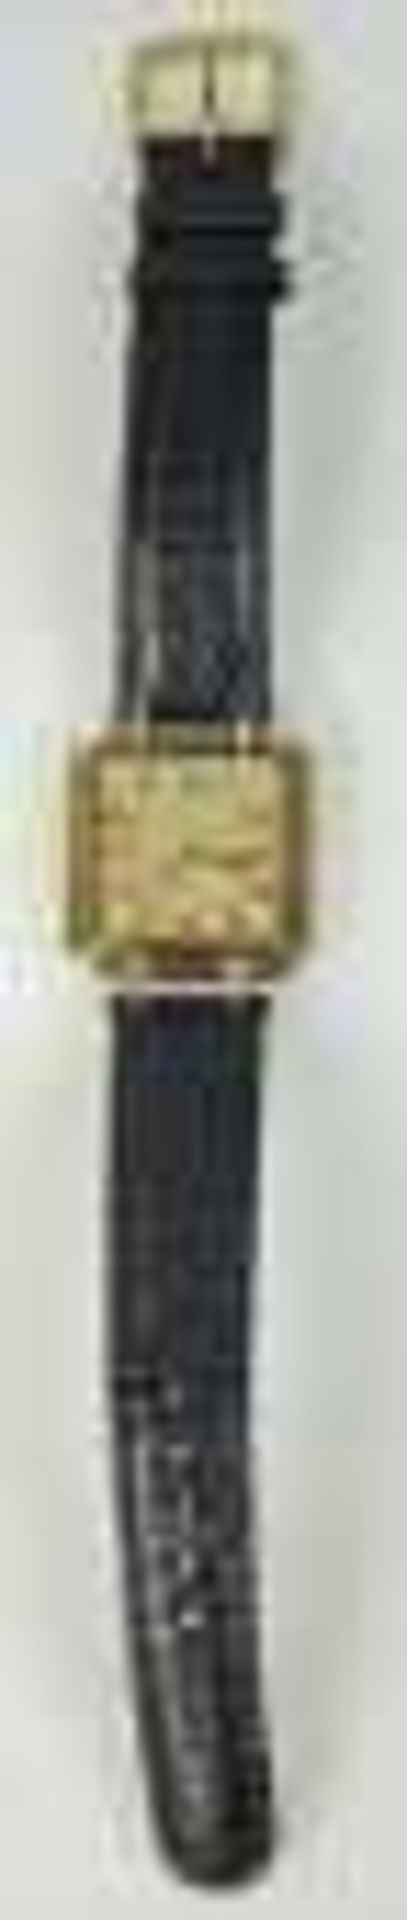 ARMBANDUHR Guebelin Lucerne, Handaufzug, viereckiges Gehäuse, bicolor, goldfarbenes Ziffernblatt mit - Bild 2 aus 2